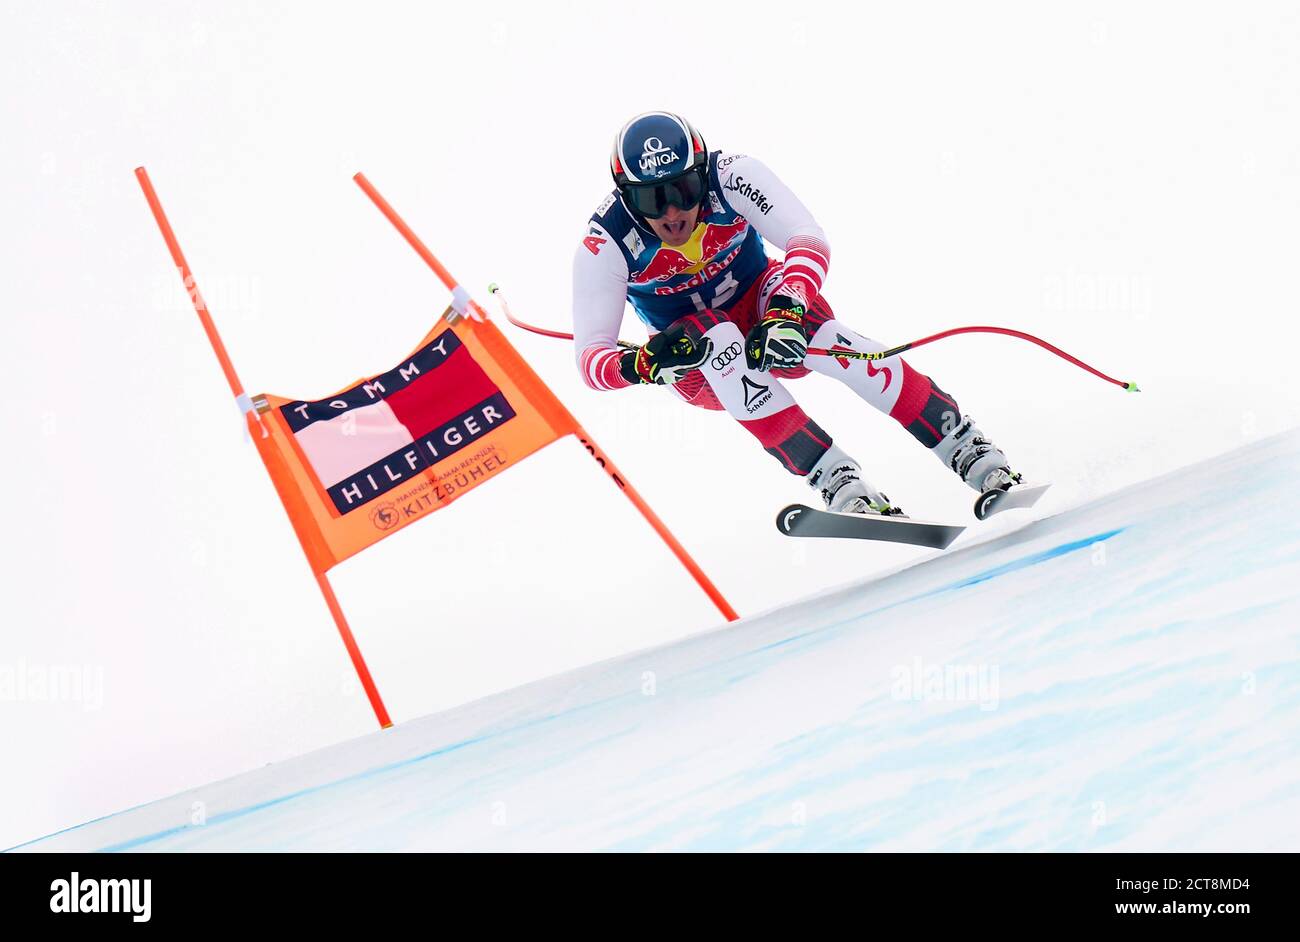 Matthias Mayer auf dem Weg zum Sieg beim Herren-Downhill-Event zum FIS Alpine Ski World Cup in Kitzbühel. BILDNACHWEIS : MARK PAIN / ALAMY Stockfoto